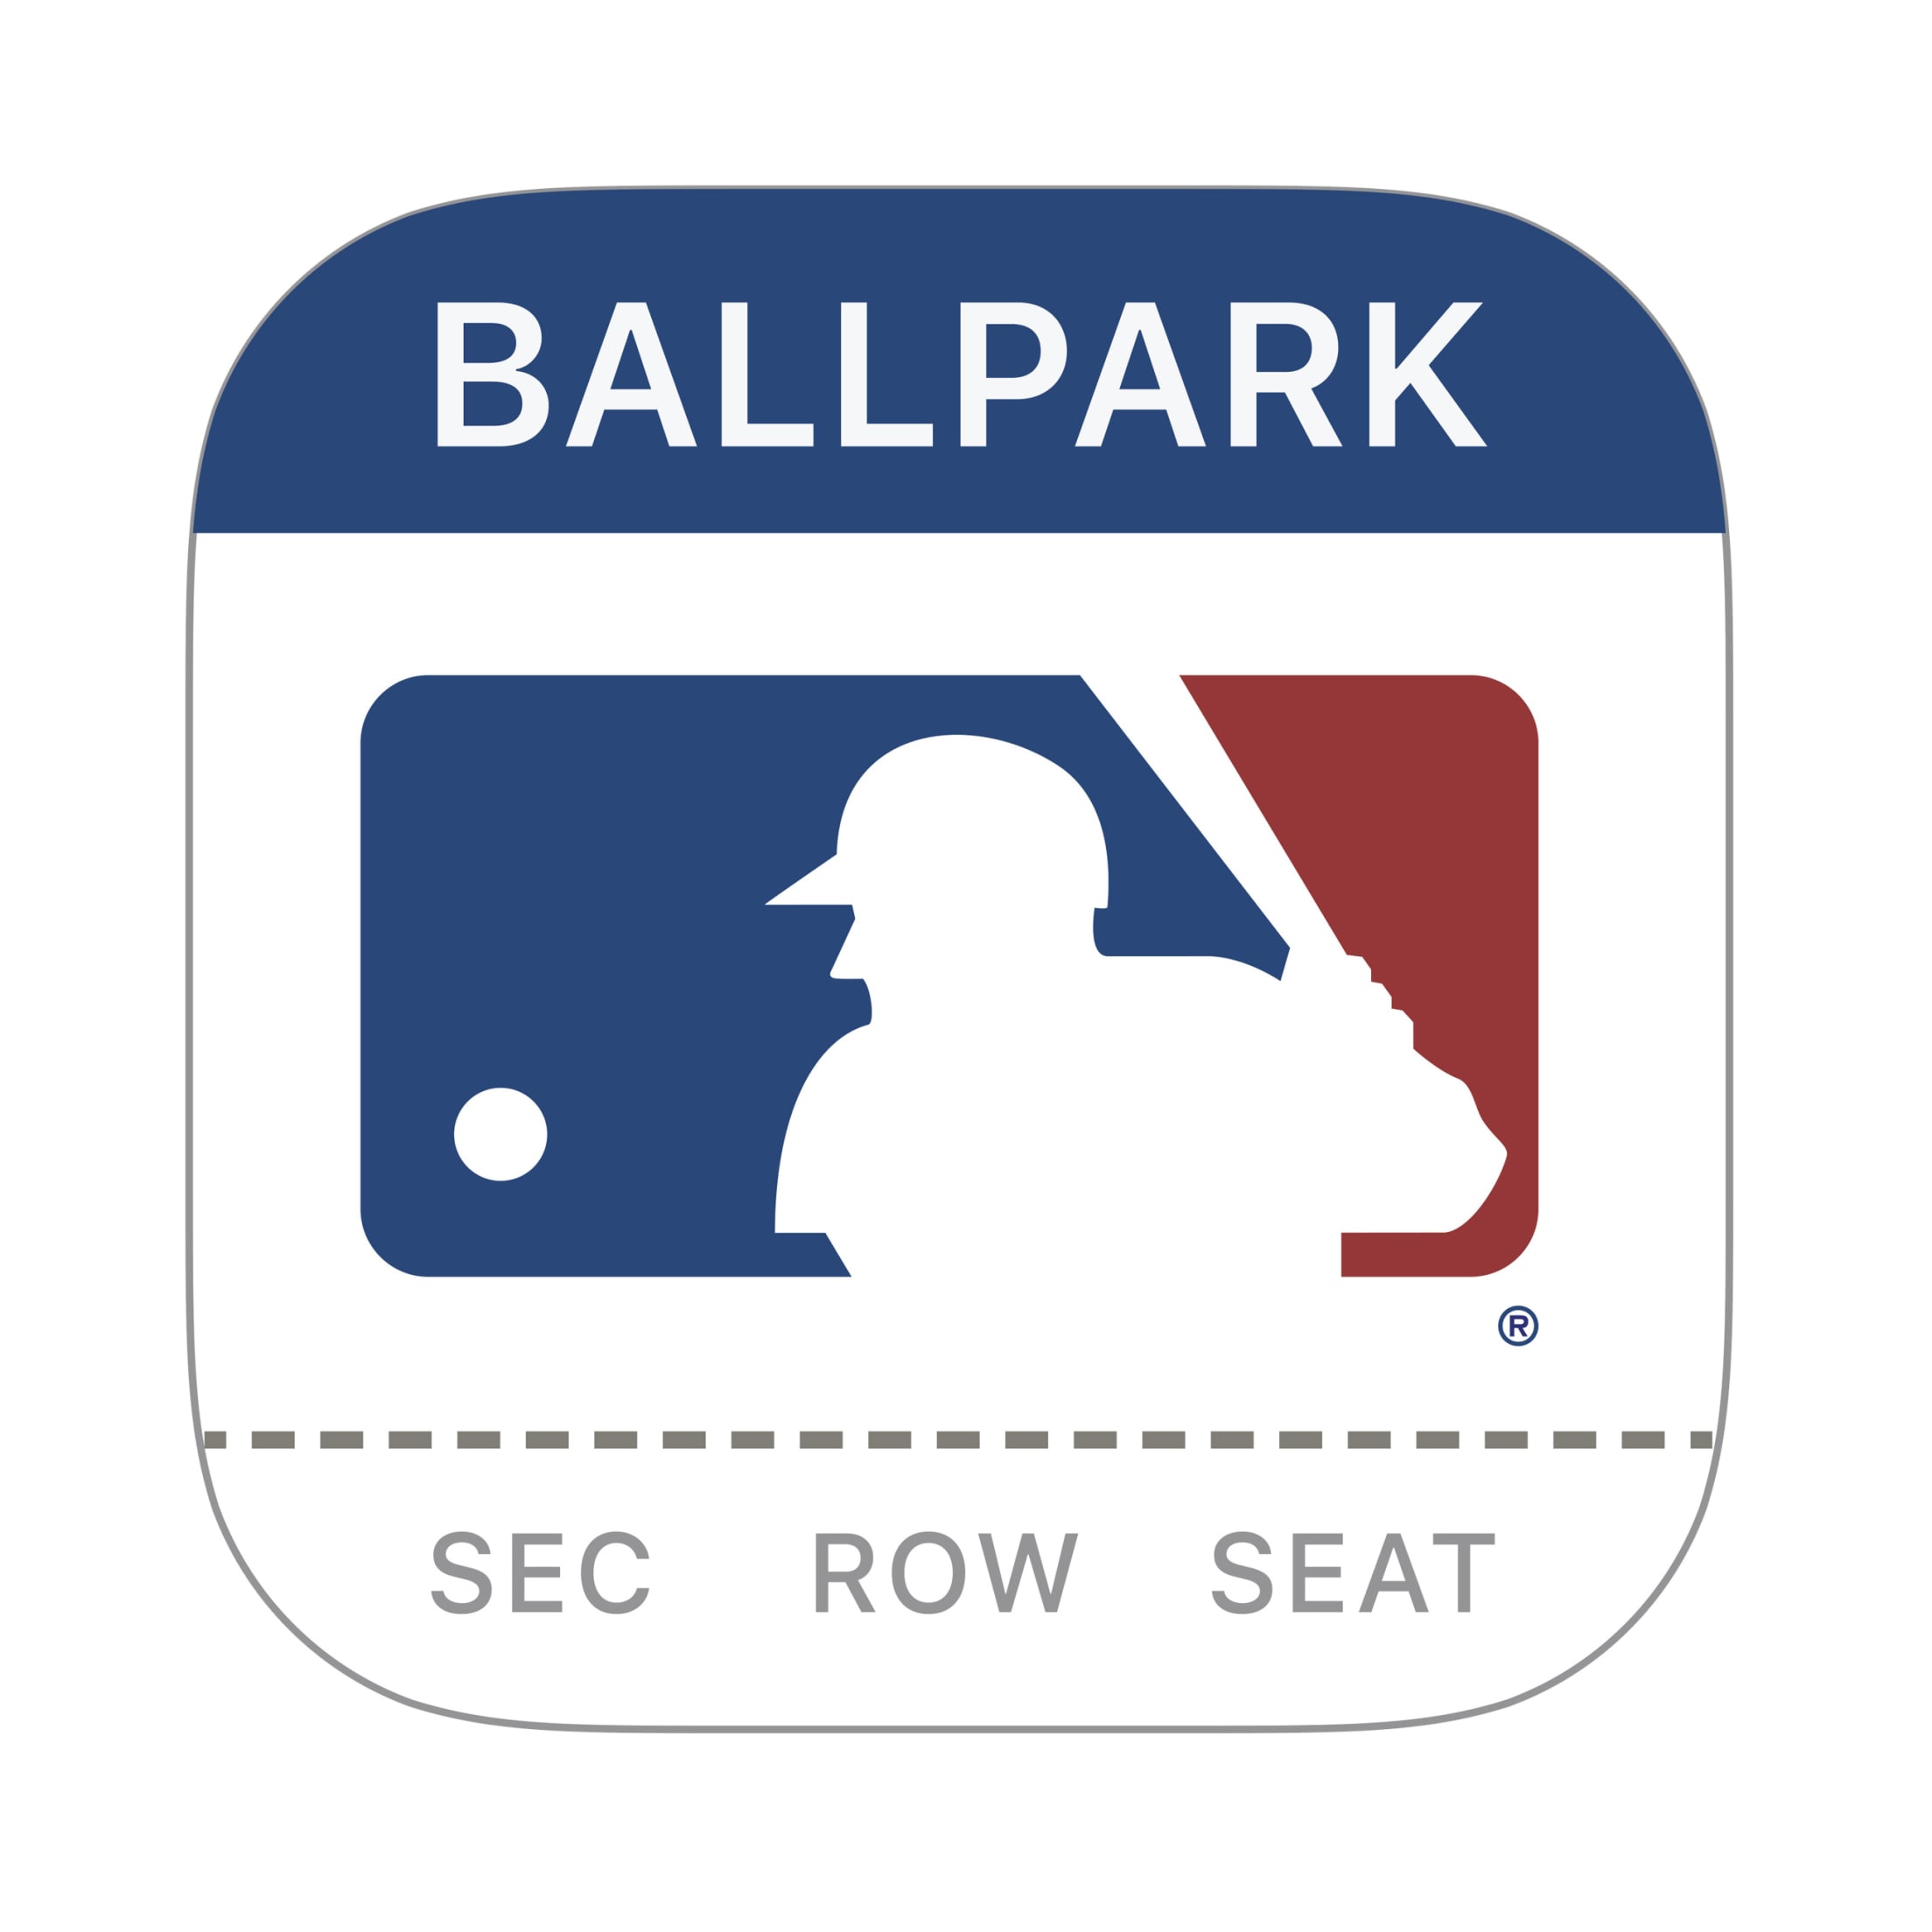 Atlanta Braves: 2022 Skull Outdoor Logo - Officially Licensed MLB Outdoor  Graphic